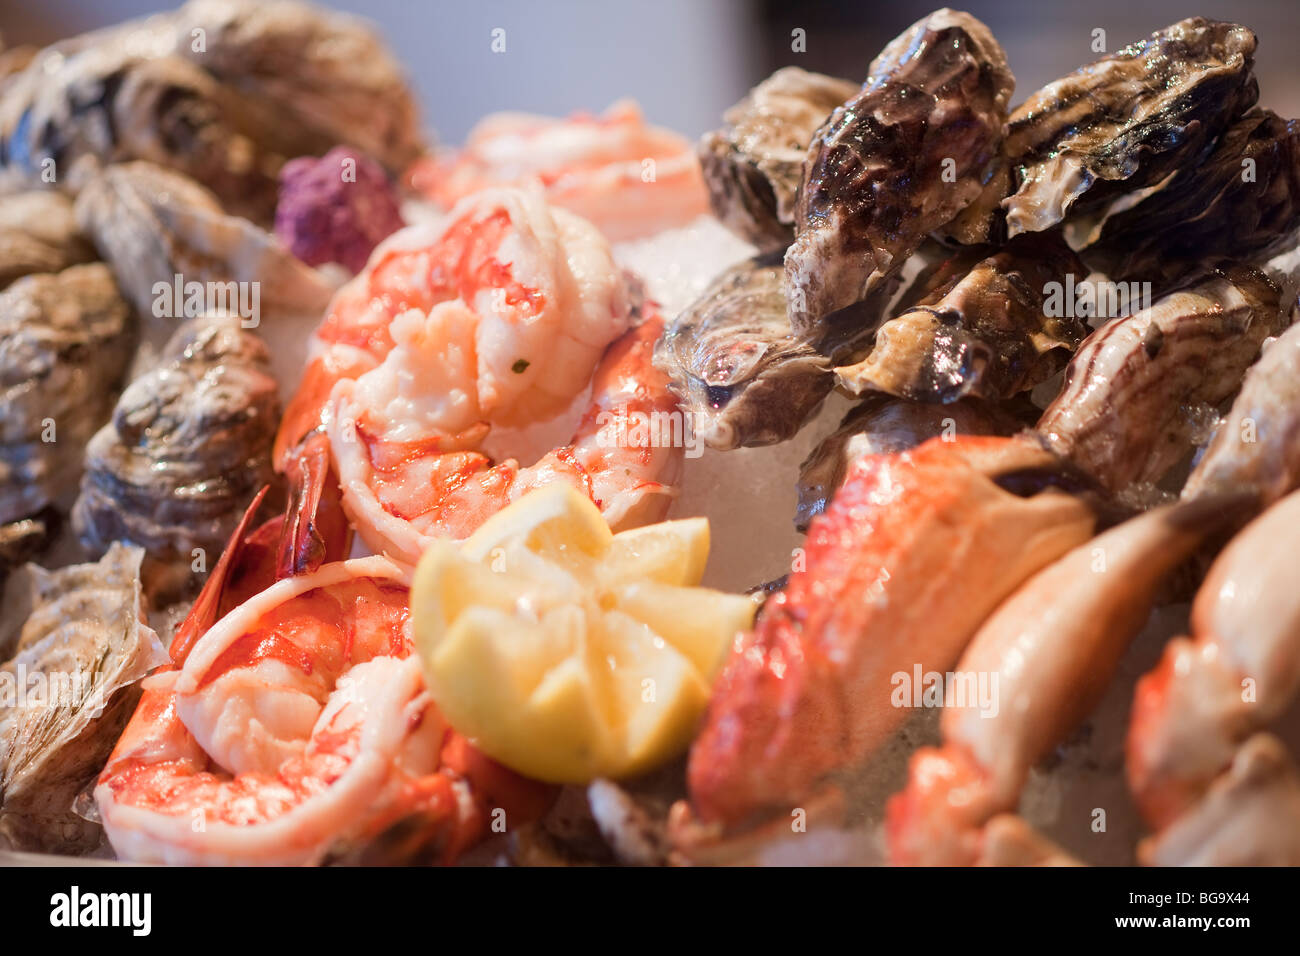 Les crevettes, les huîtres et les pinces de crabe rock, California, United States of America Banque D'Images